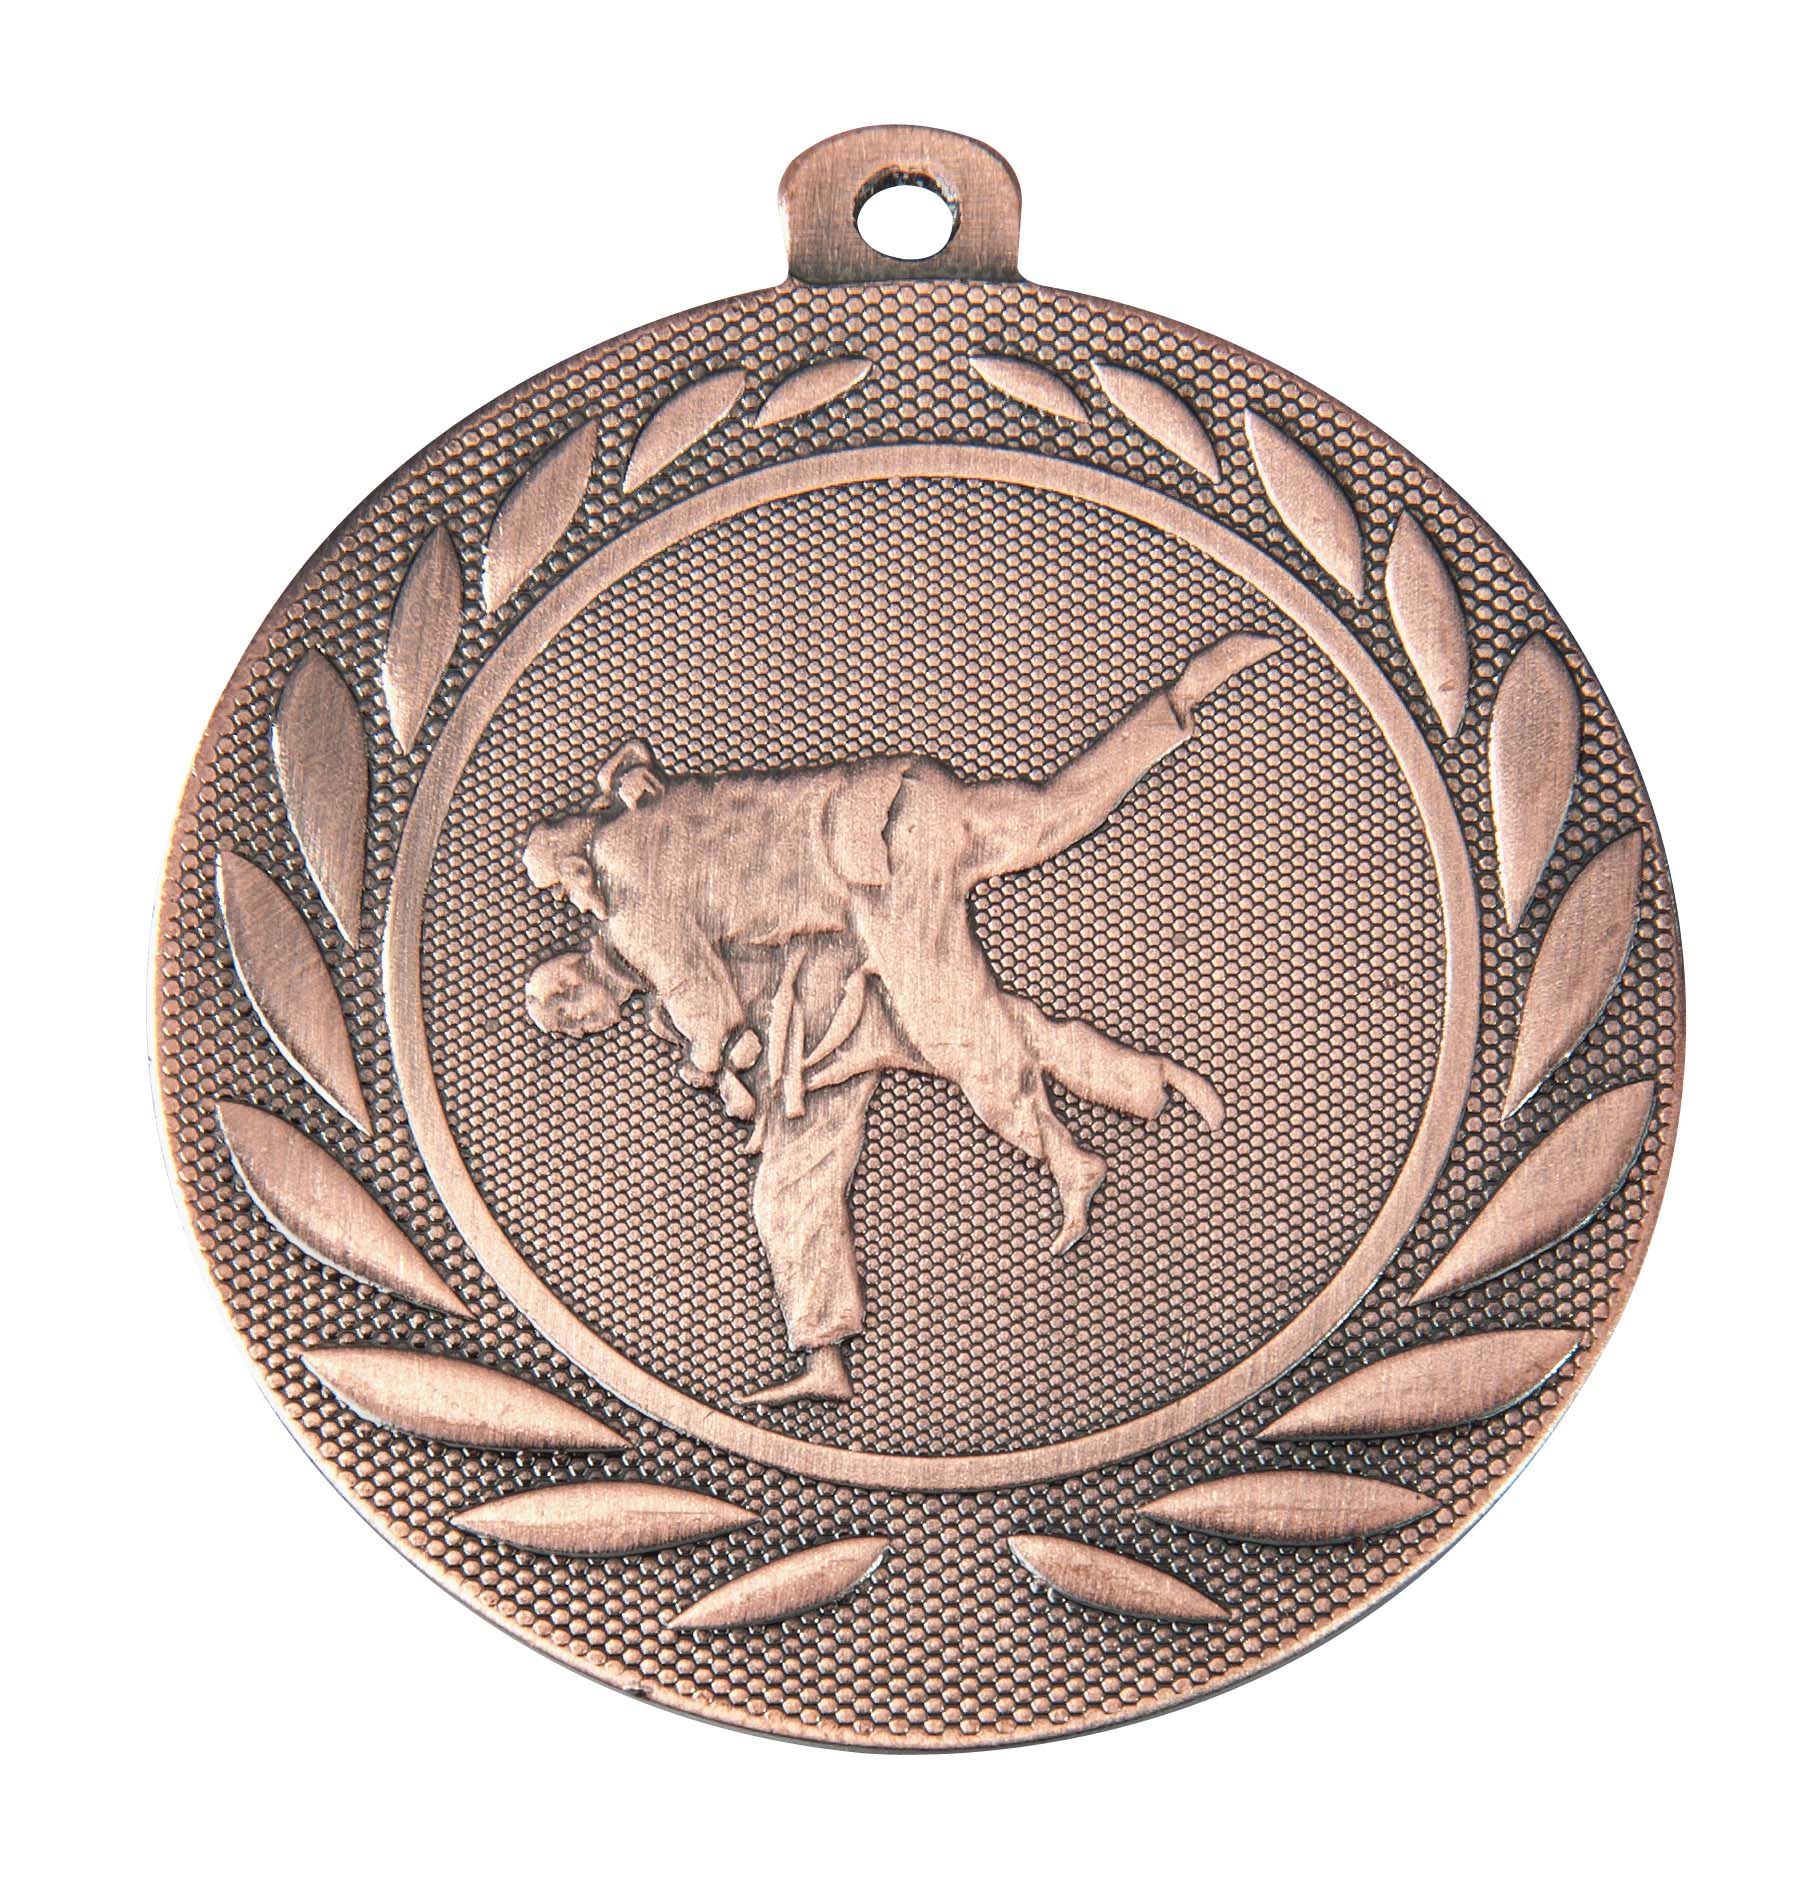 Judo-Medaille DI5000.I inkl. Band und Beschriftung Bronze Fertig montiert gegen Aufpreis